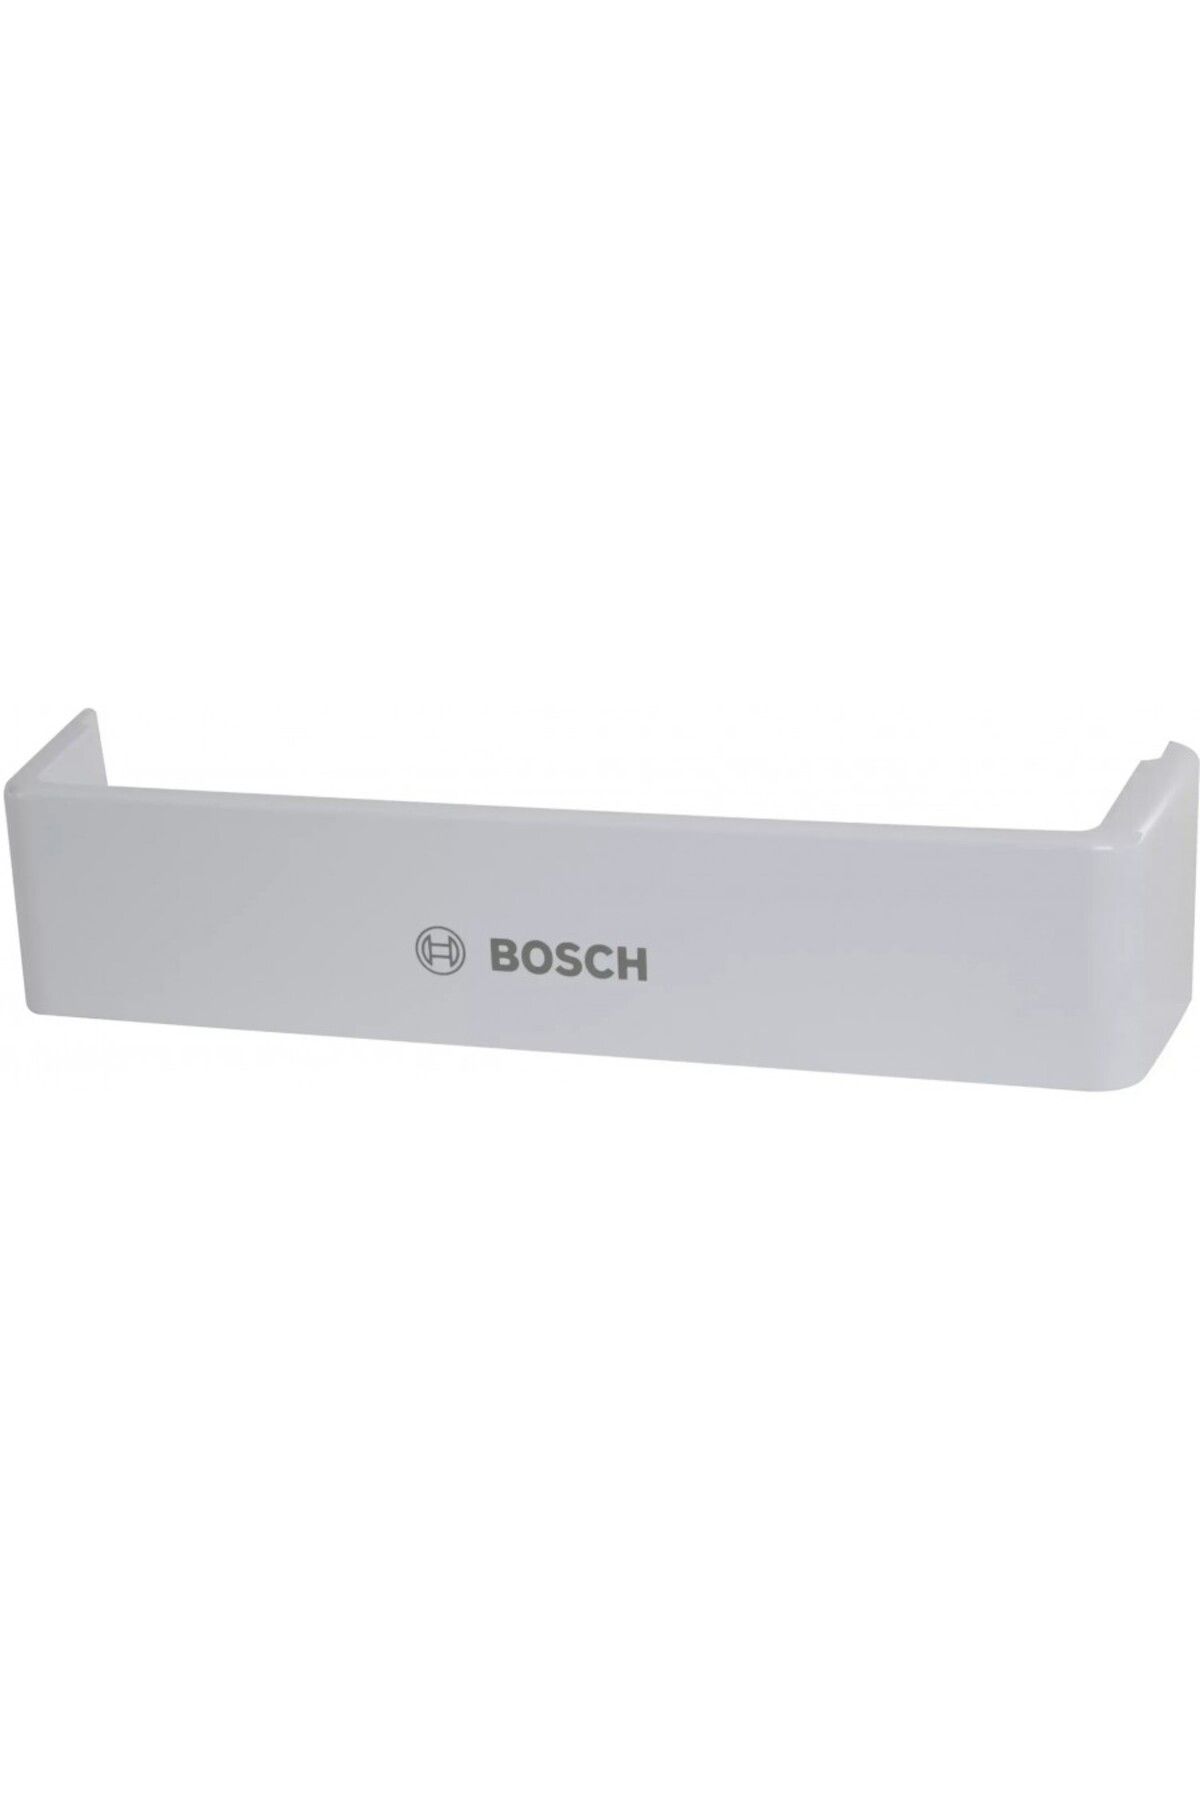 Bosch Siemens Profilo Uyumlu Buzdoabı Şişelik Rafı . Cihazınızla uyumluluğu sorgulayınız